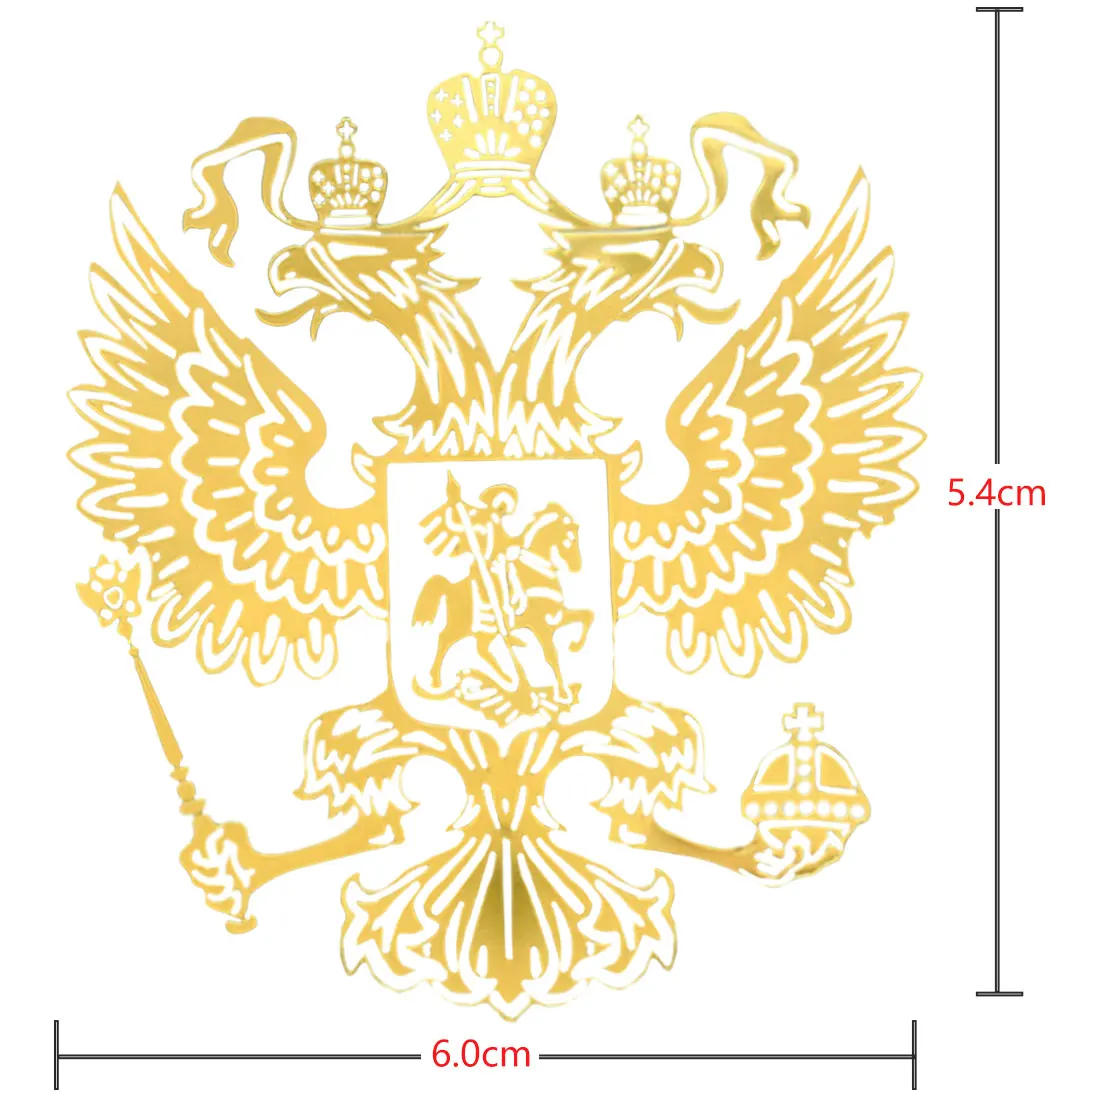 Dewtreetali 6,0*5,4 см, 9,0*8,4 см, герб Россия, никелевая металлическая наклейка, наклейки для автомобиля из России, наклейки для ноутбука